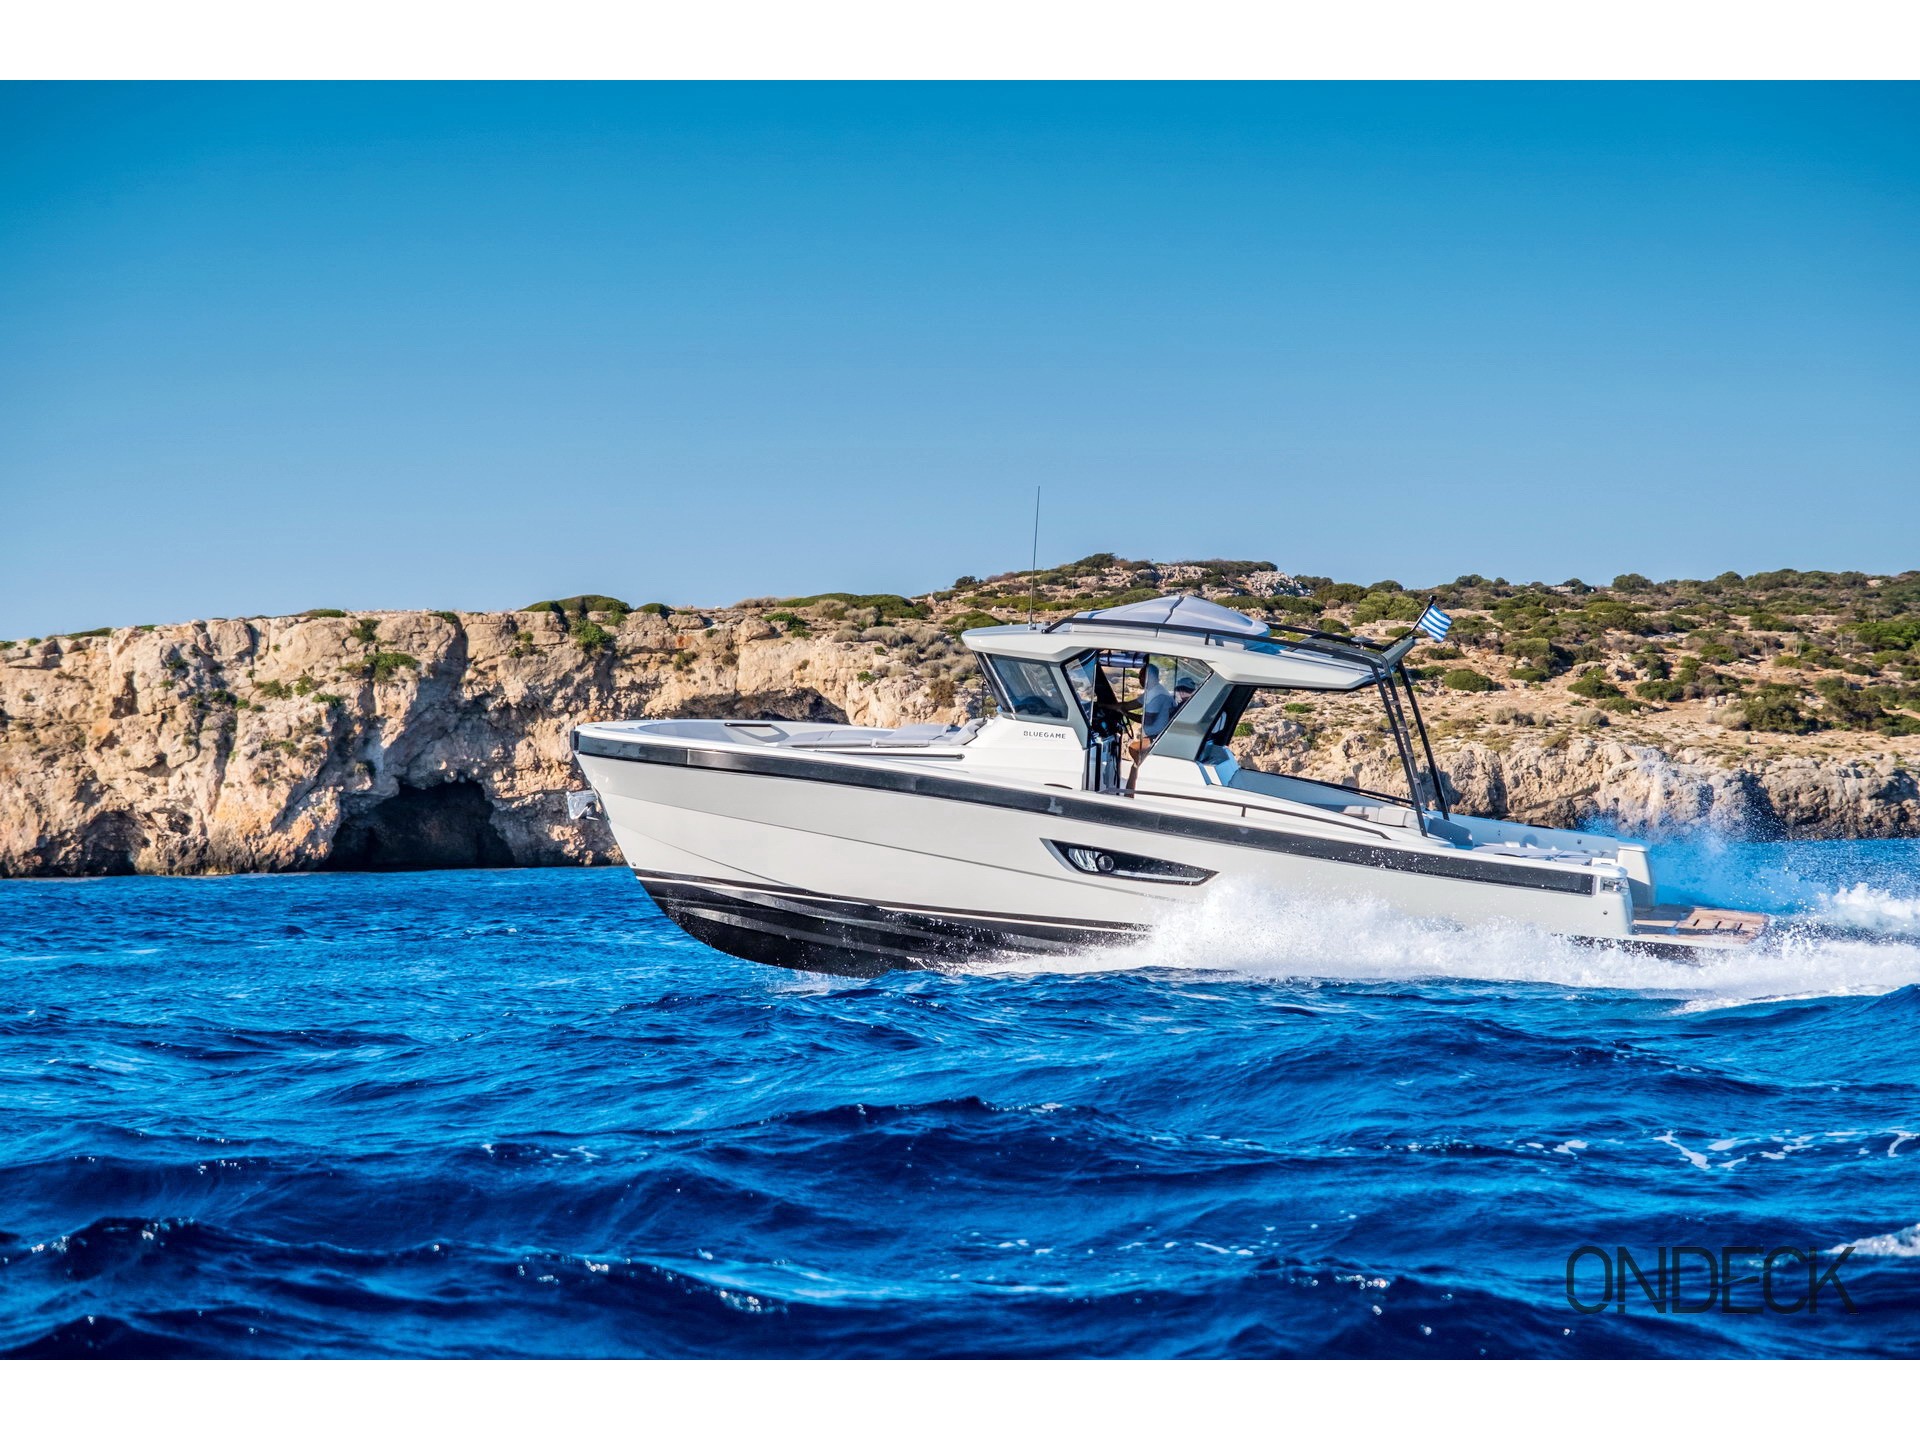 Bluegame BG42 - Motor Boat Charter Greece & Boat hire in Greece Cyclades Islands Mykonos Mykonos 1